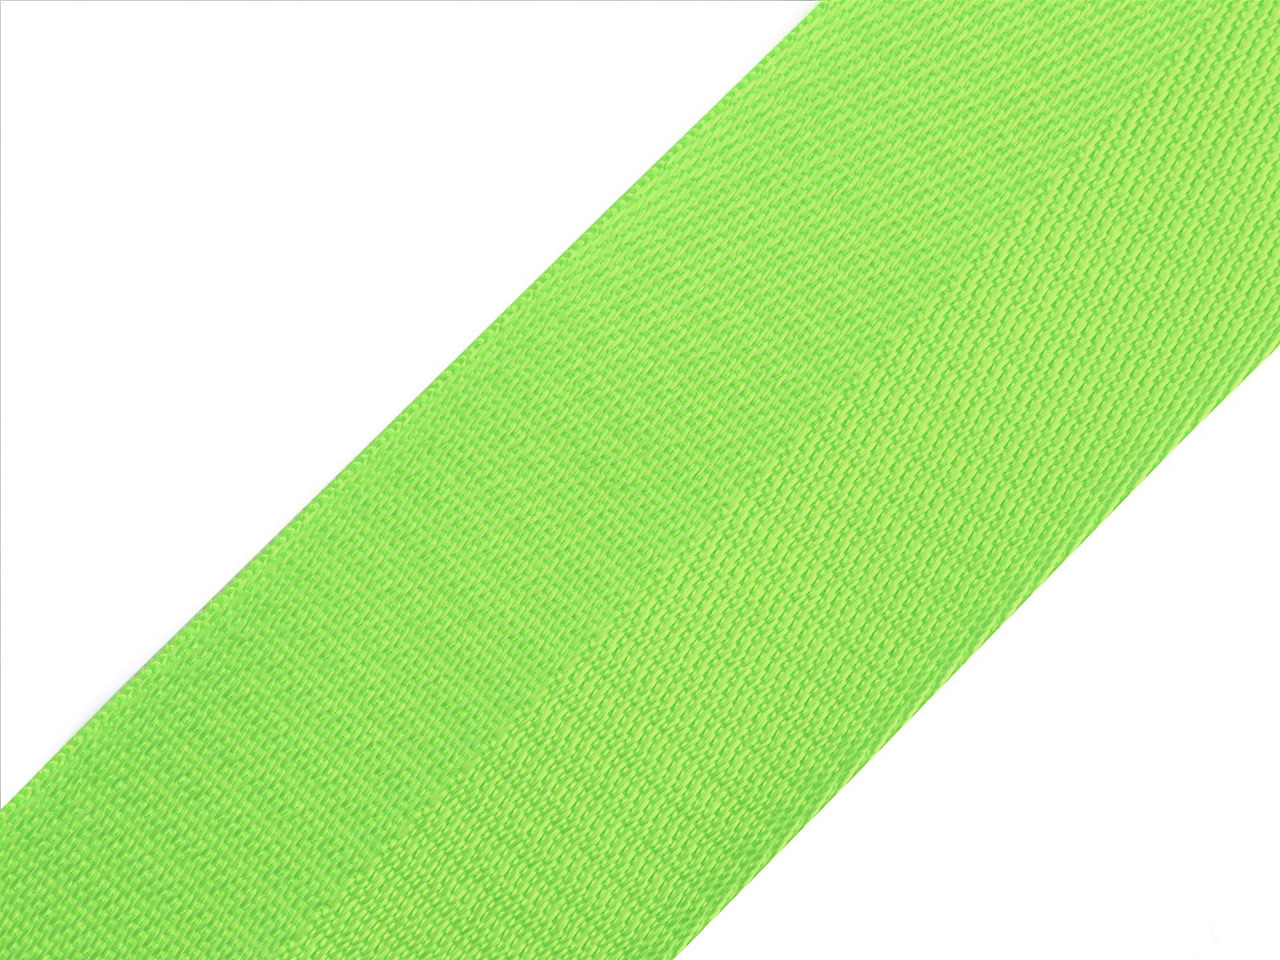 Hladký oboustranný popruh s leskem šíře 50 mm, barva 9 zelená neon